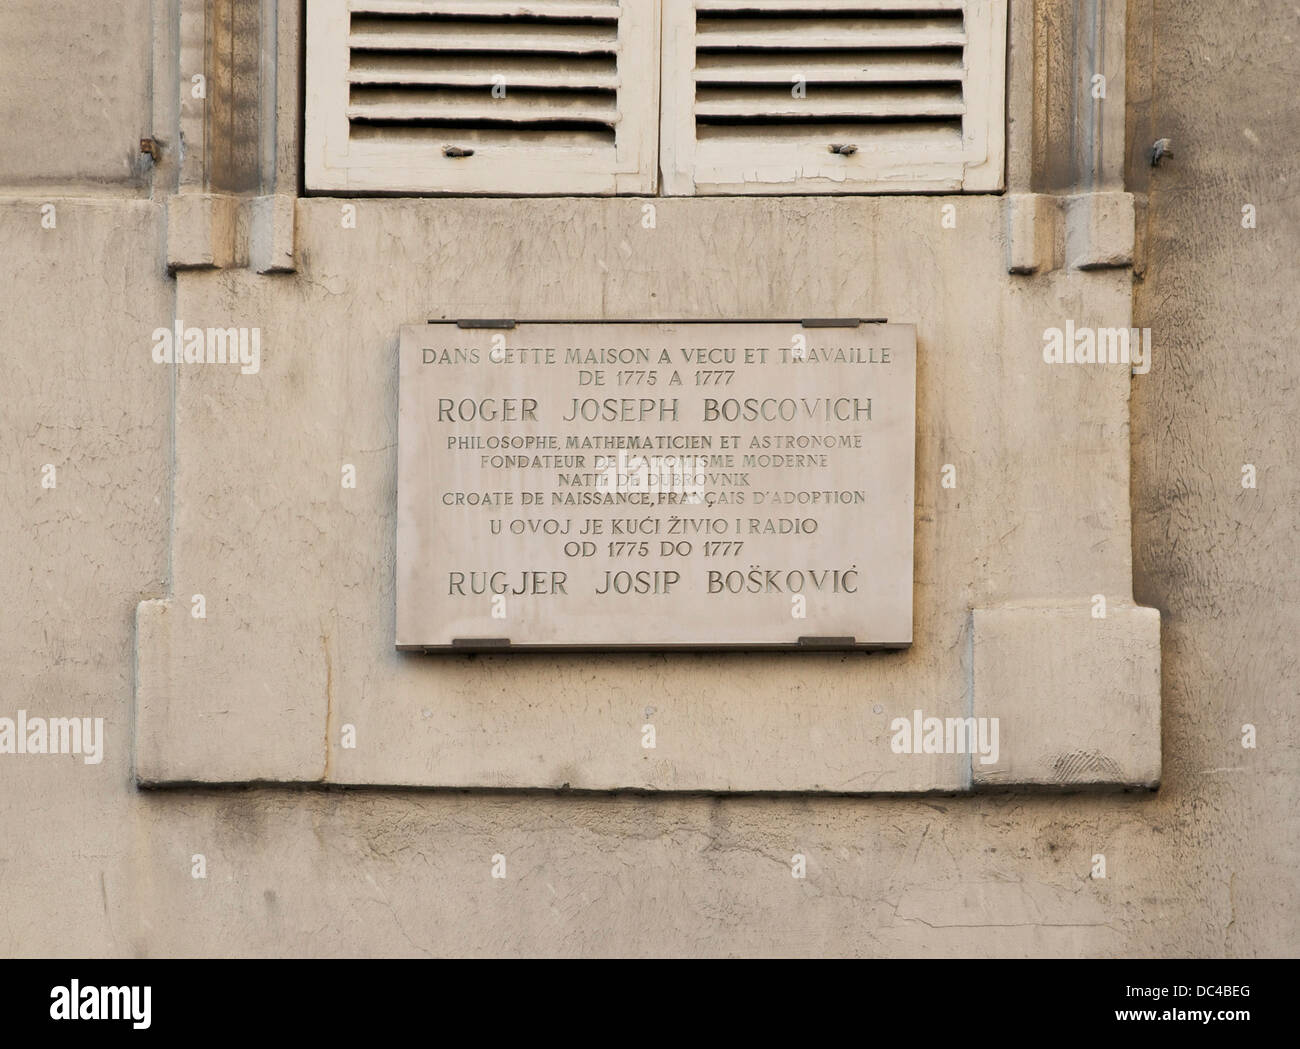 Ici durée de plaque en hommage à Rudjer Boscovic, chercheur croate. Paris, rue de Seine. Banque D'Images